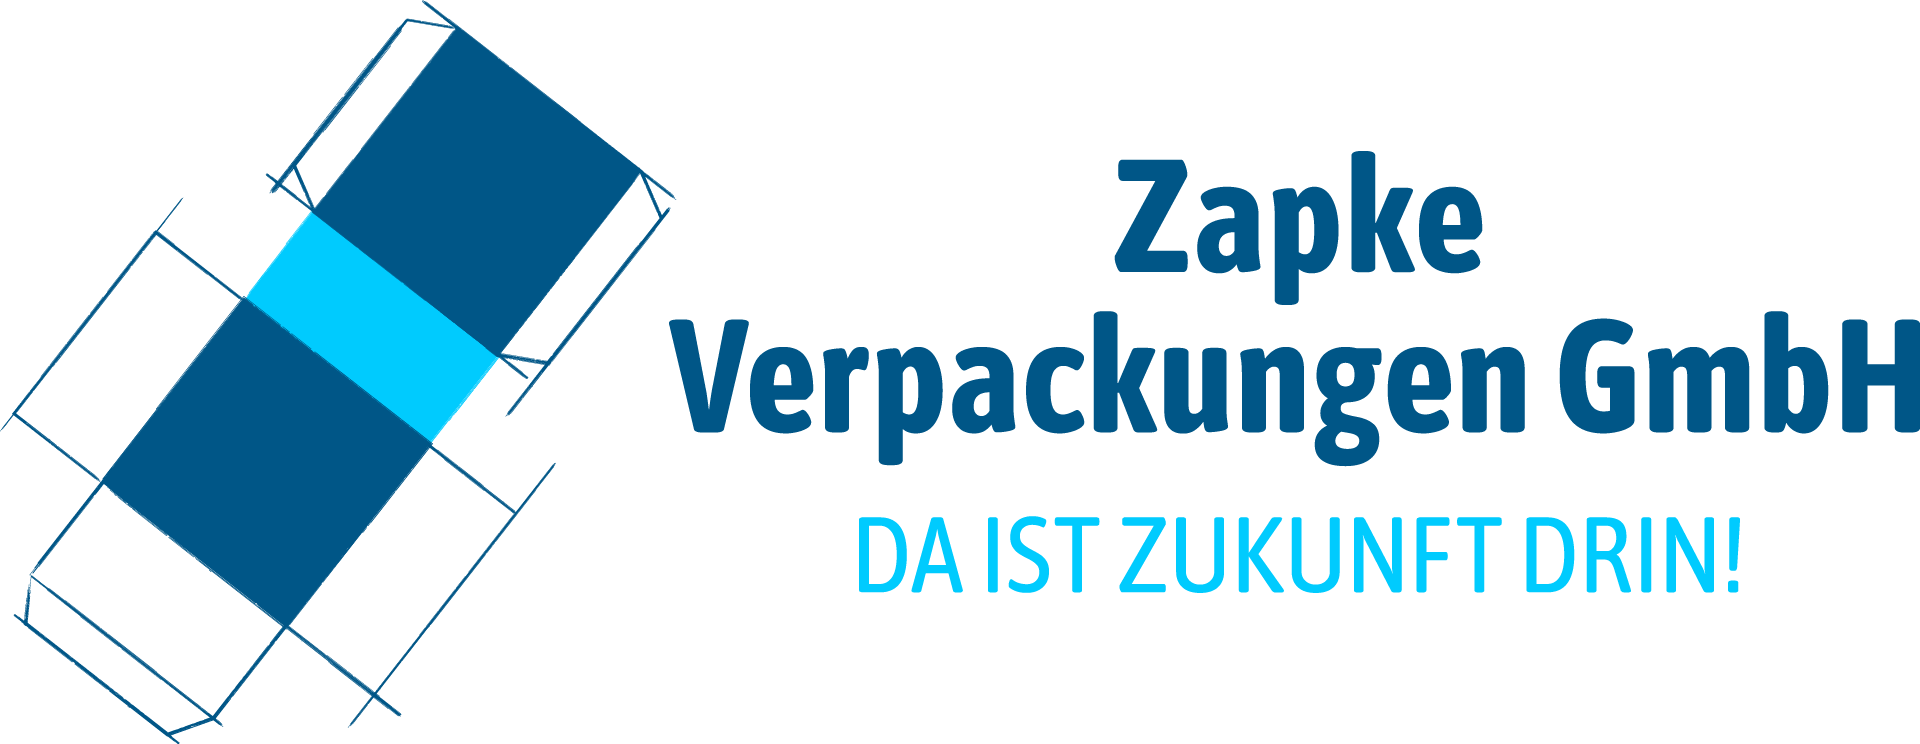 Logo Zapke Verpackungen GmbH